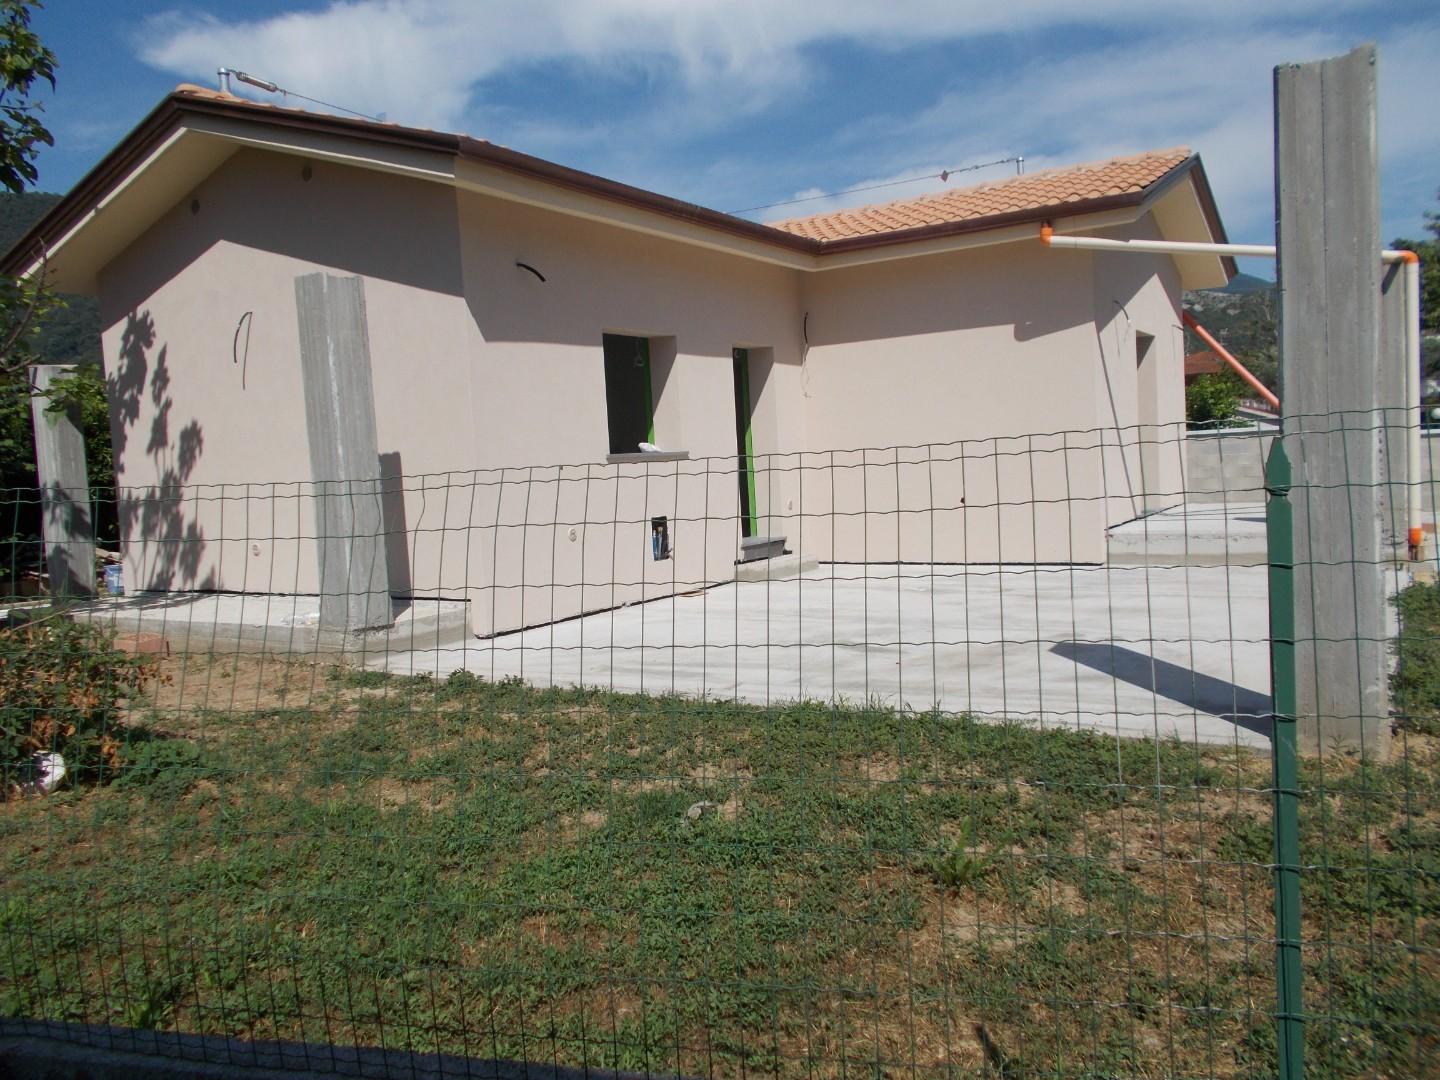 Casa singola in vendita - Orzignano, San Giuliano Terme